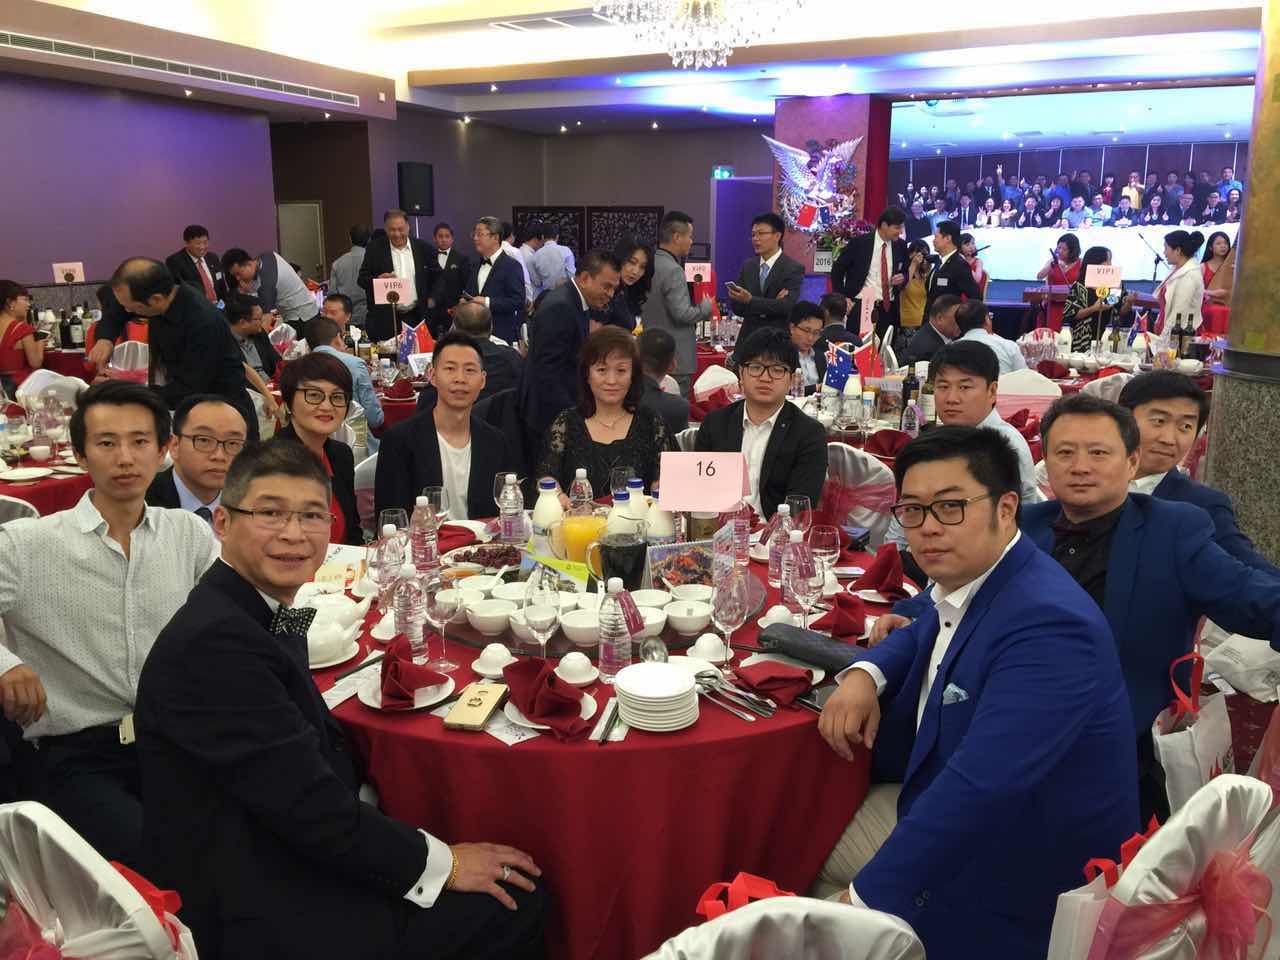 15 2016年澳洲华人商会年会在悉尼盛大举行  开创资源共享合作双赢新局面 